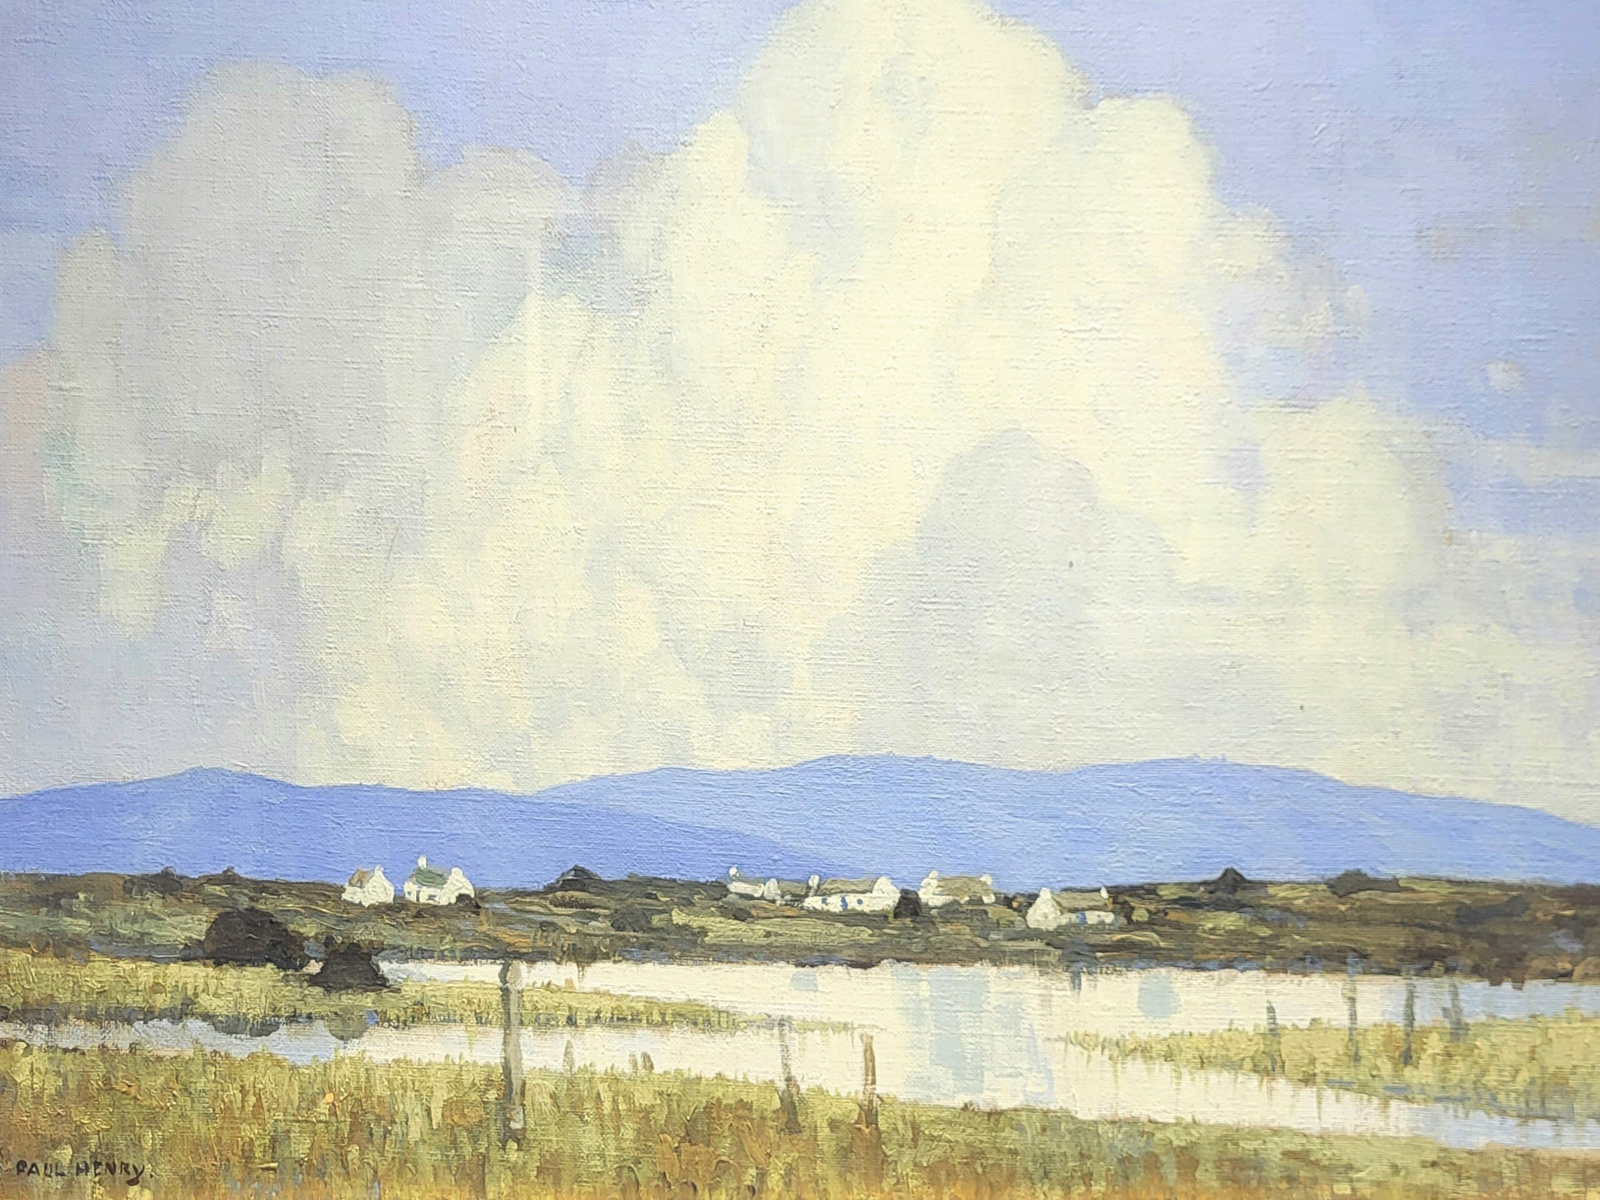 Paul Henry - Western Landscape